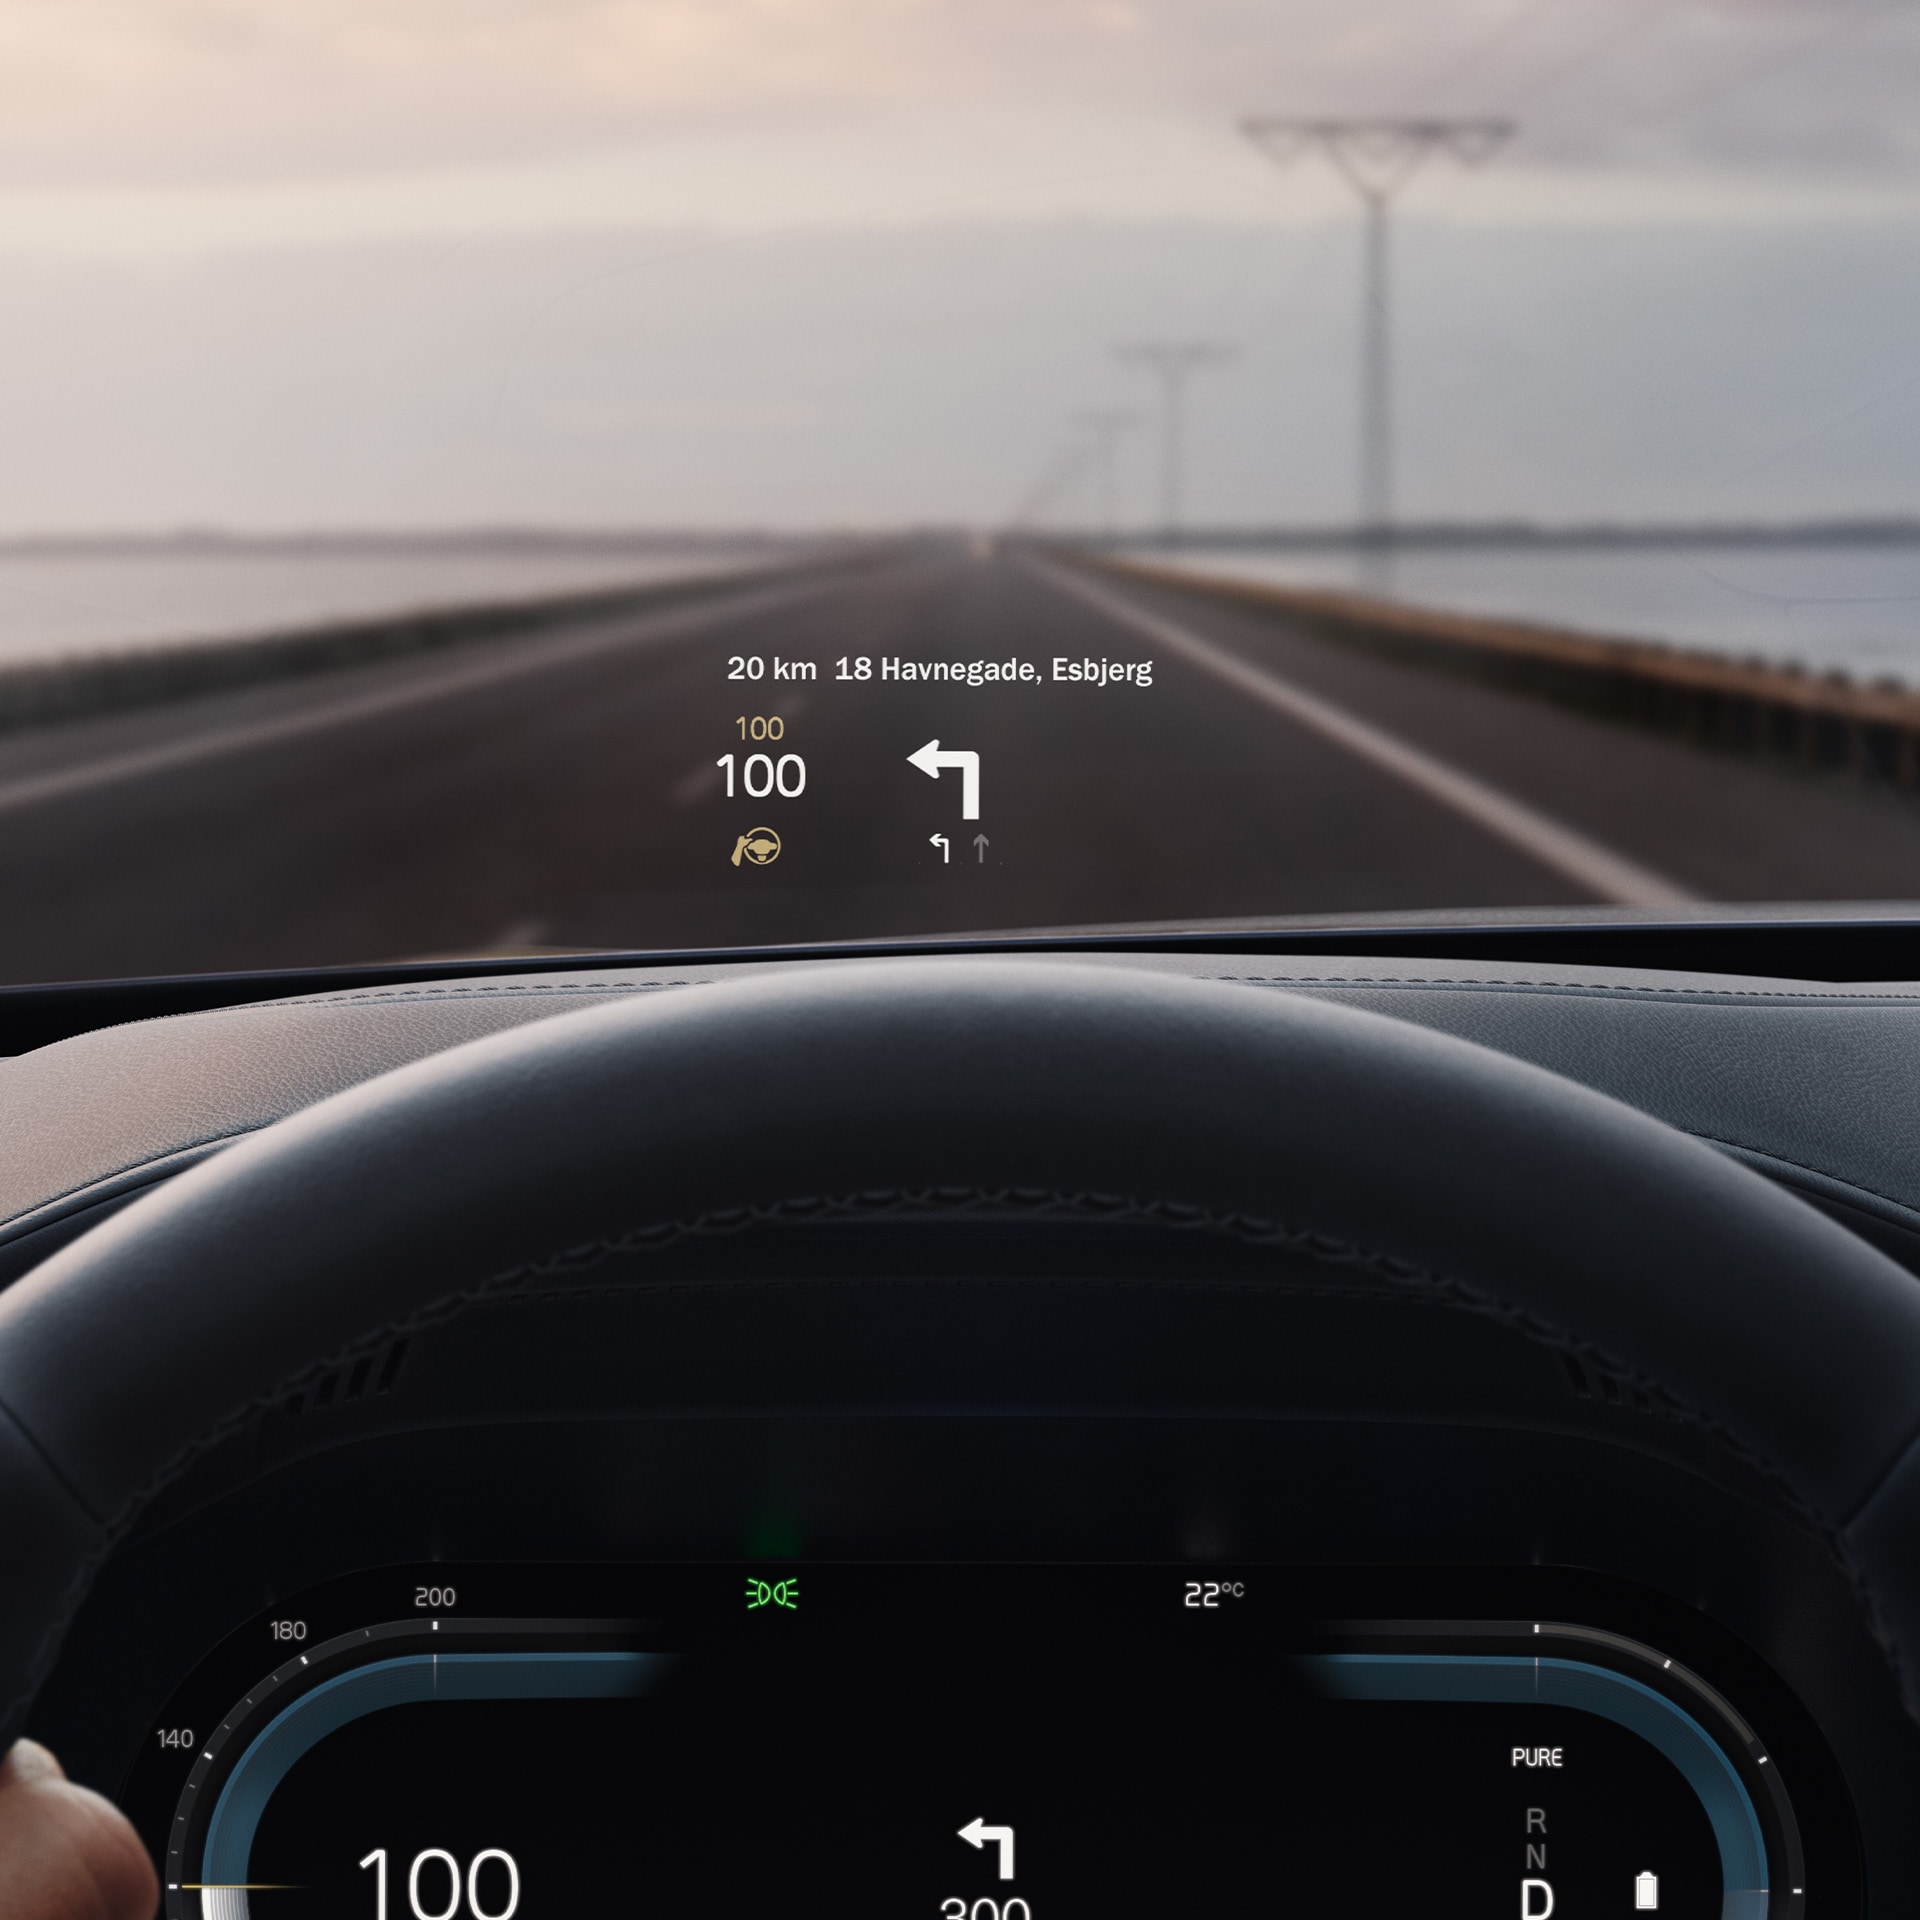 داخل سيارة فولفو، شاشة عرض رأسية تظهر سرعة القيادة والملاحة على الزجاج الأمامي.